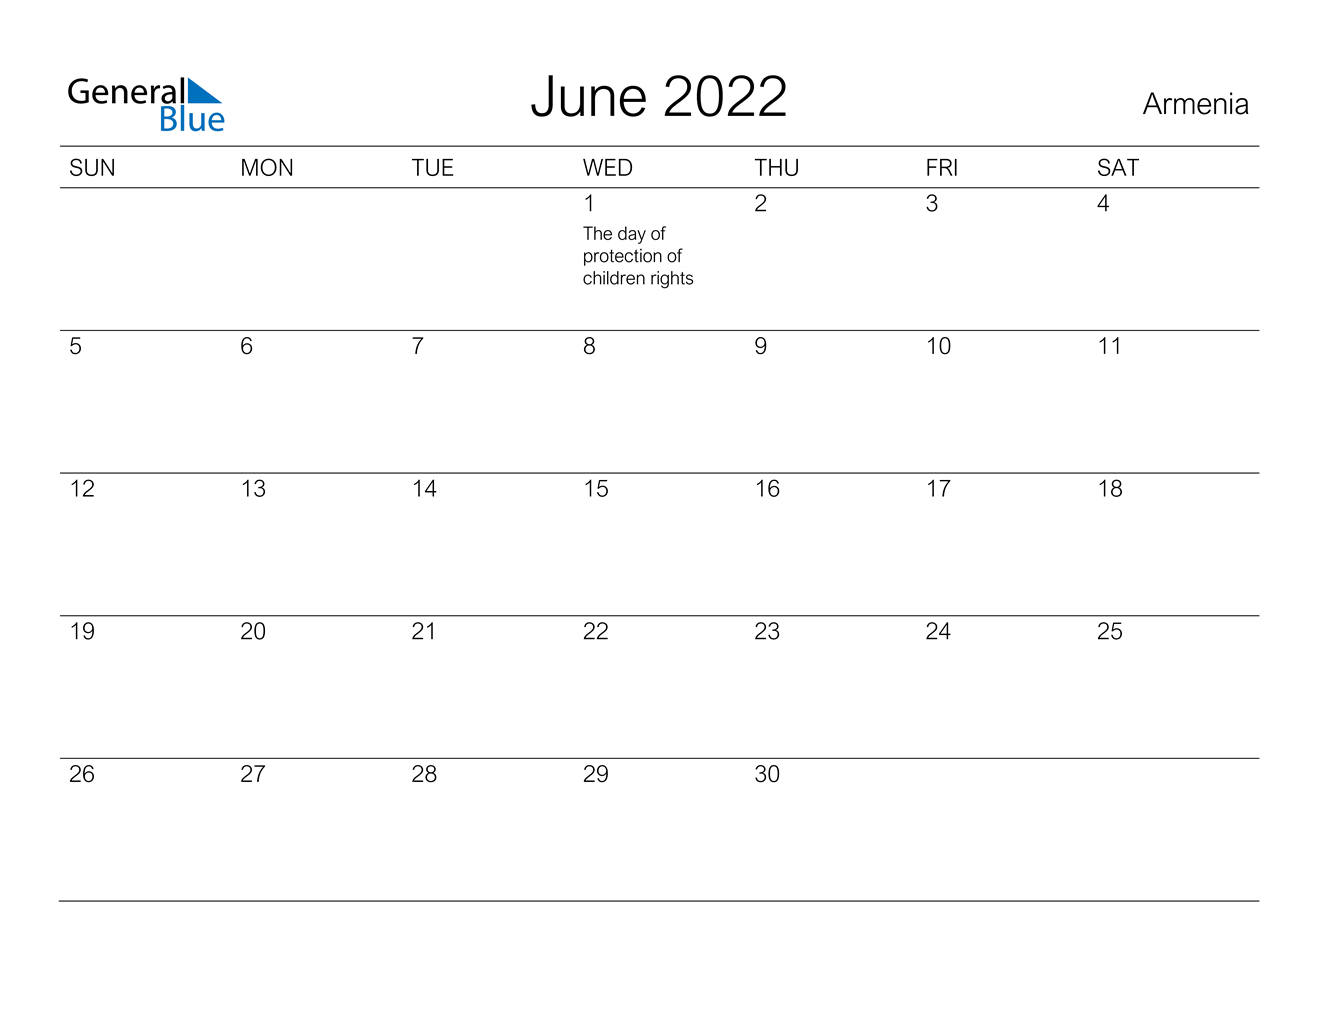 June 2022 Calendar - Armenia